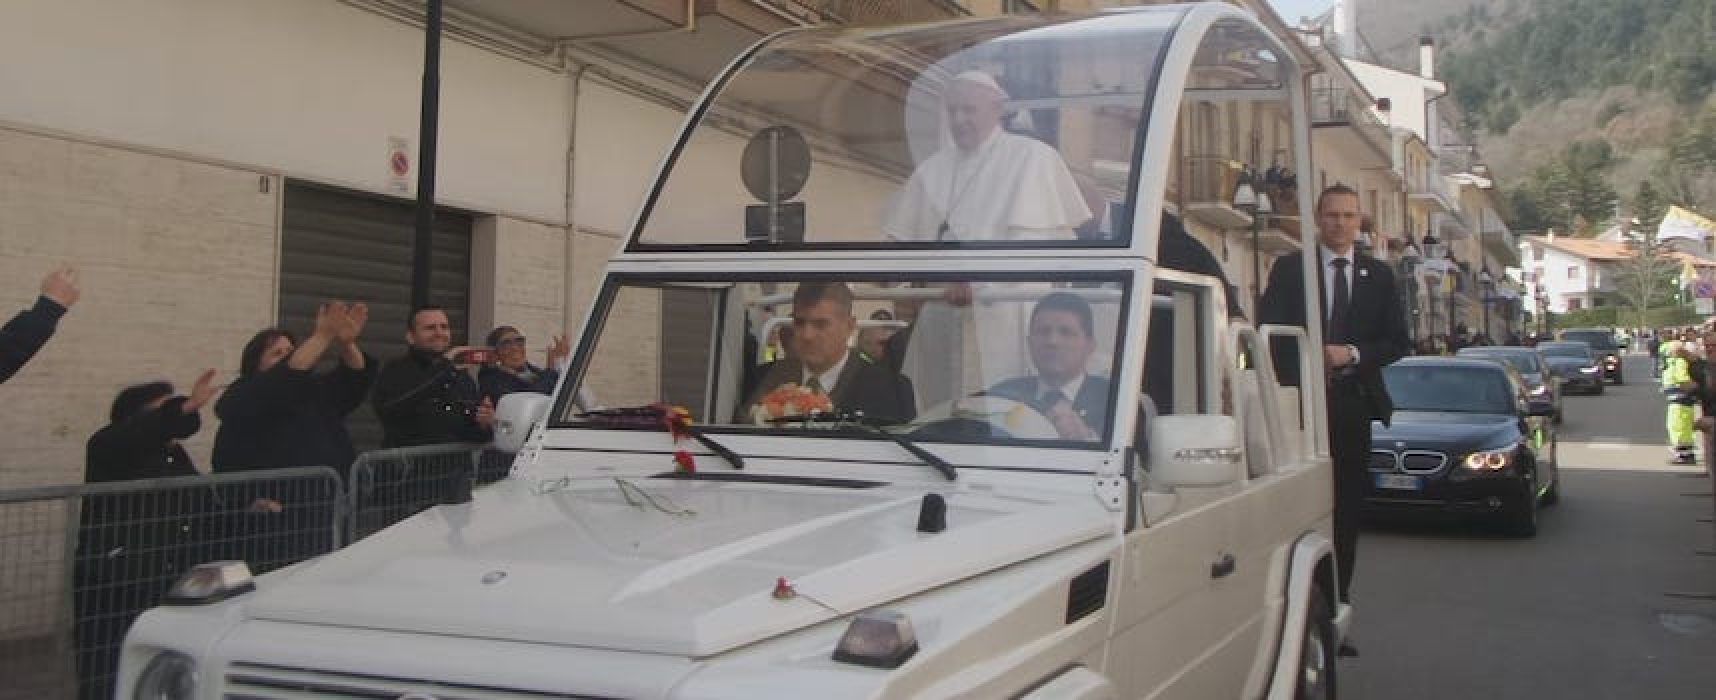 Anche l’Oer Bisceglie per la sicurezza nella visita del Papa a San Giovanni Rotondo / FOTO